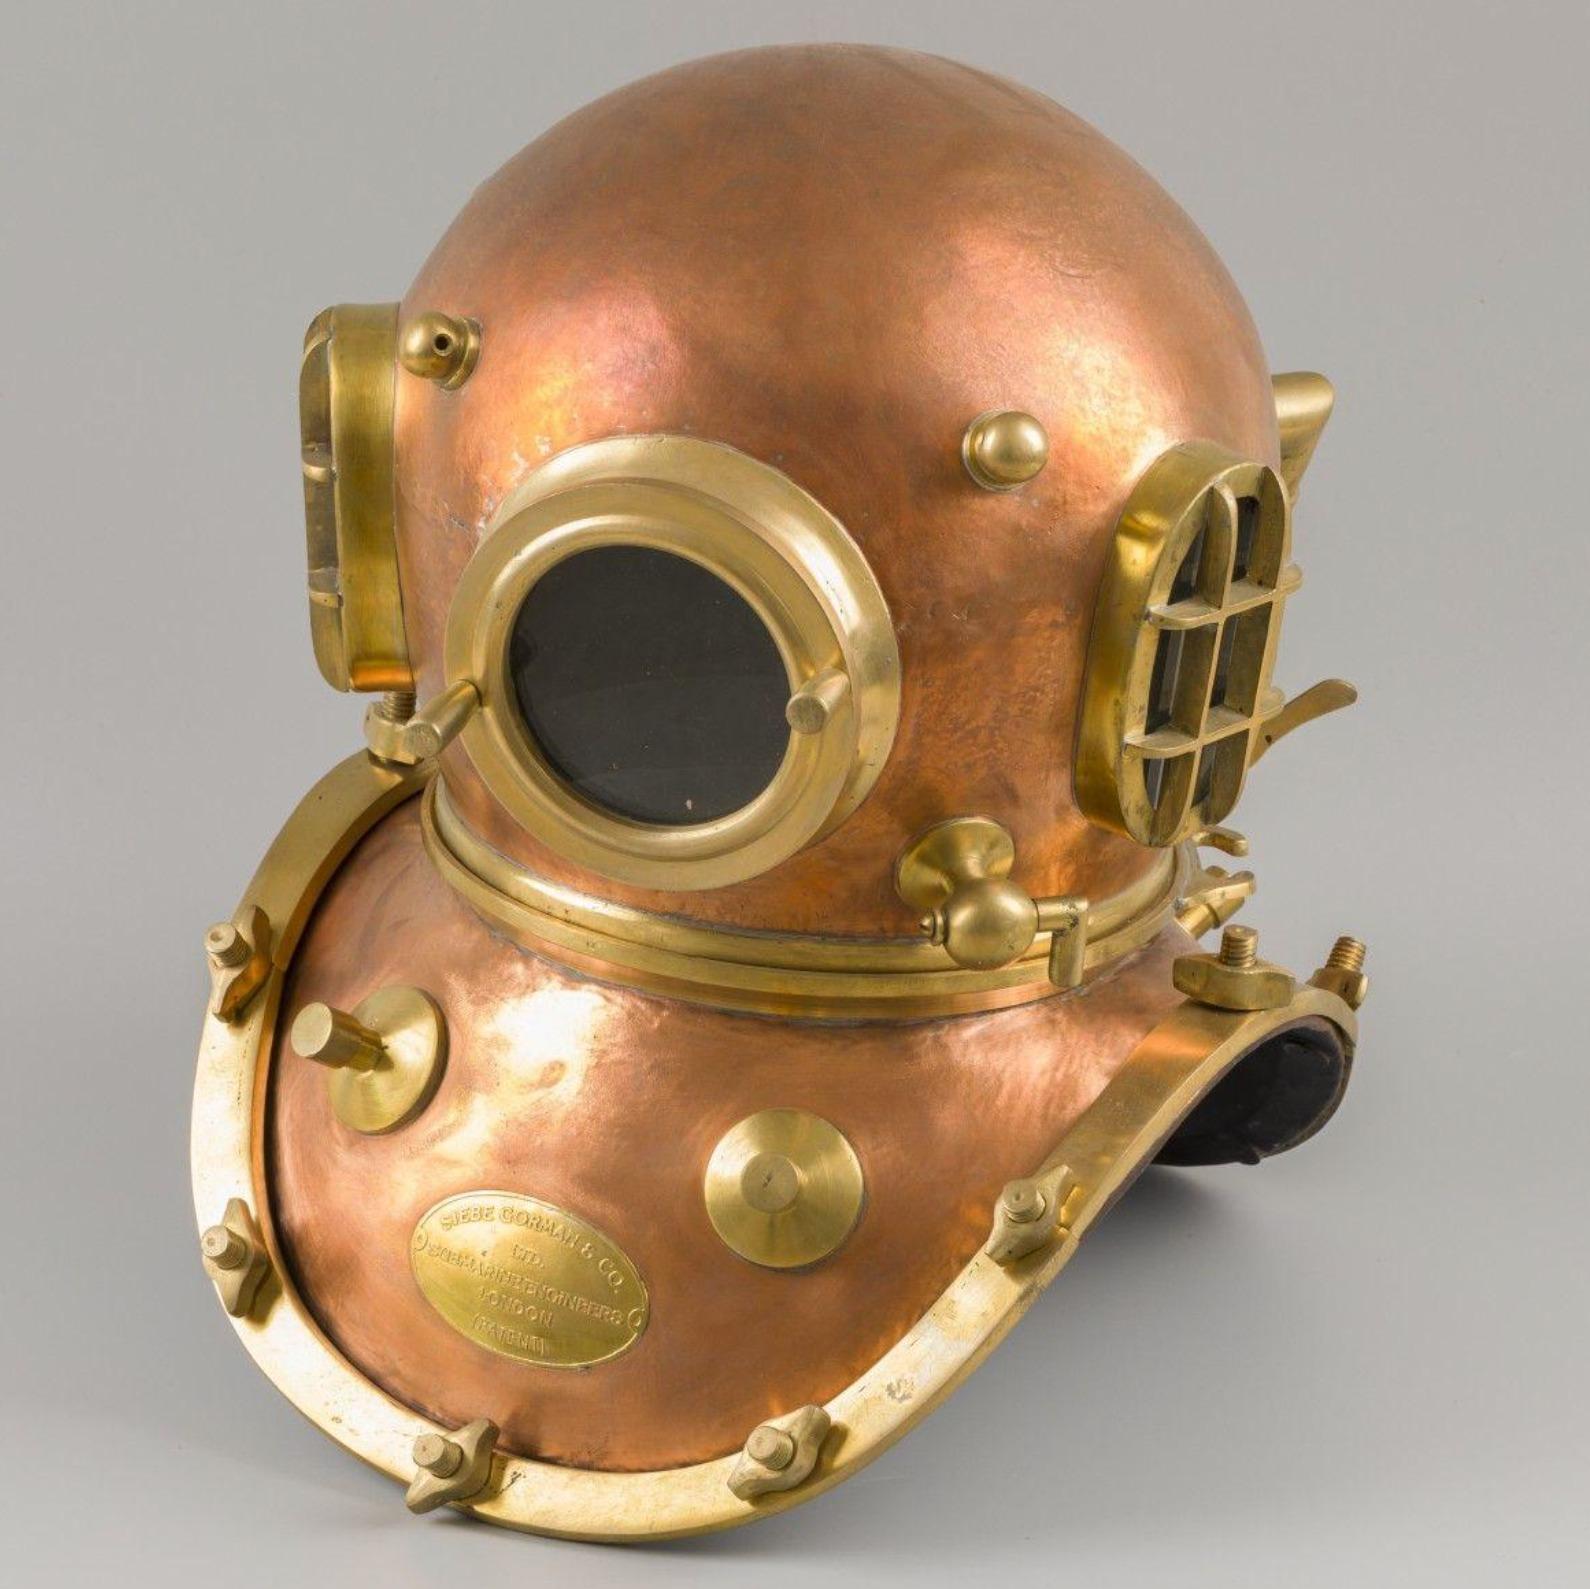 Modern Replica Brass 12-Bolt Siebe Gorman & Co. Diving Helmet